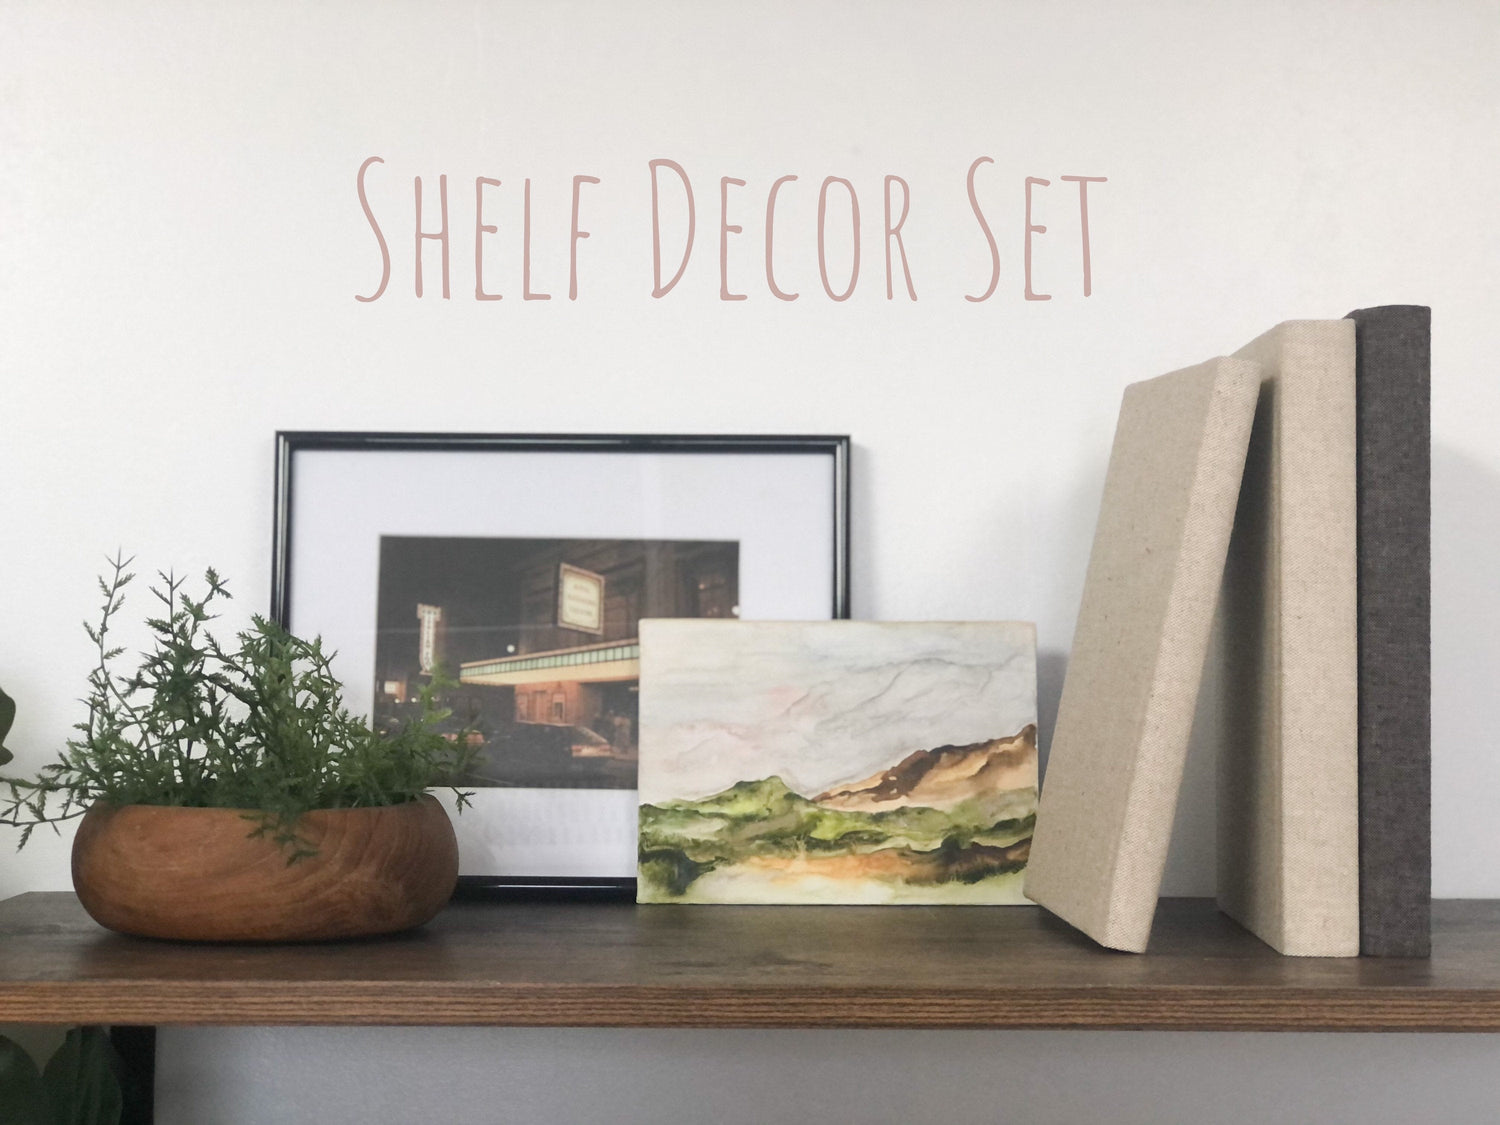 Home Decor / Shelf Decor Set / Landscape Painting / Decorative Books